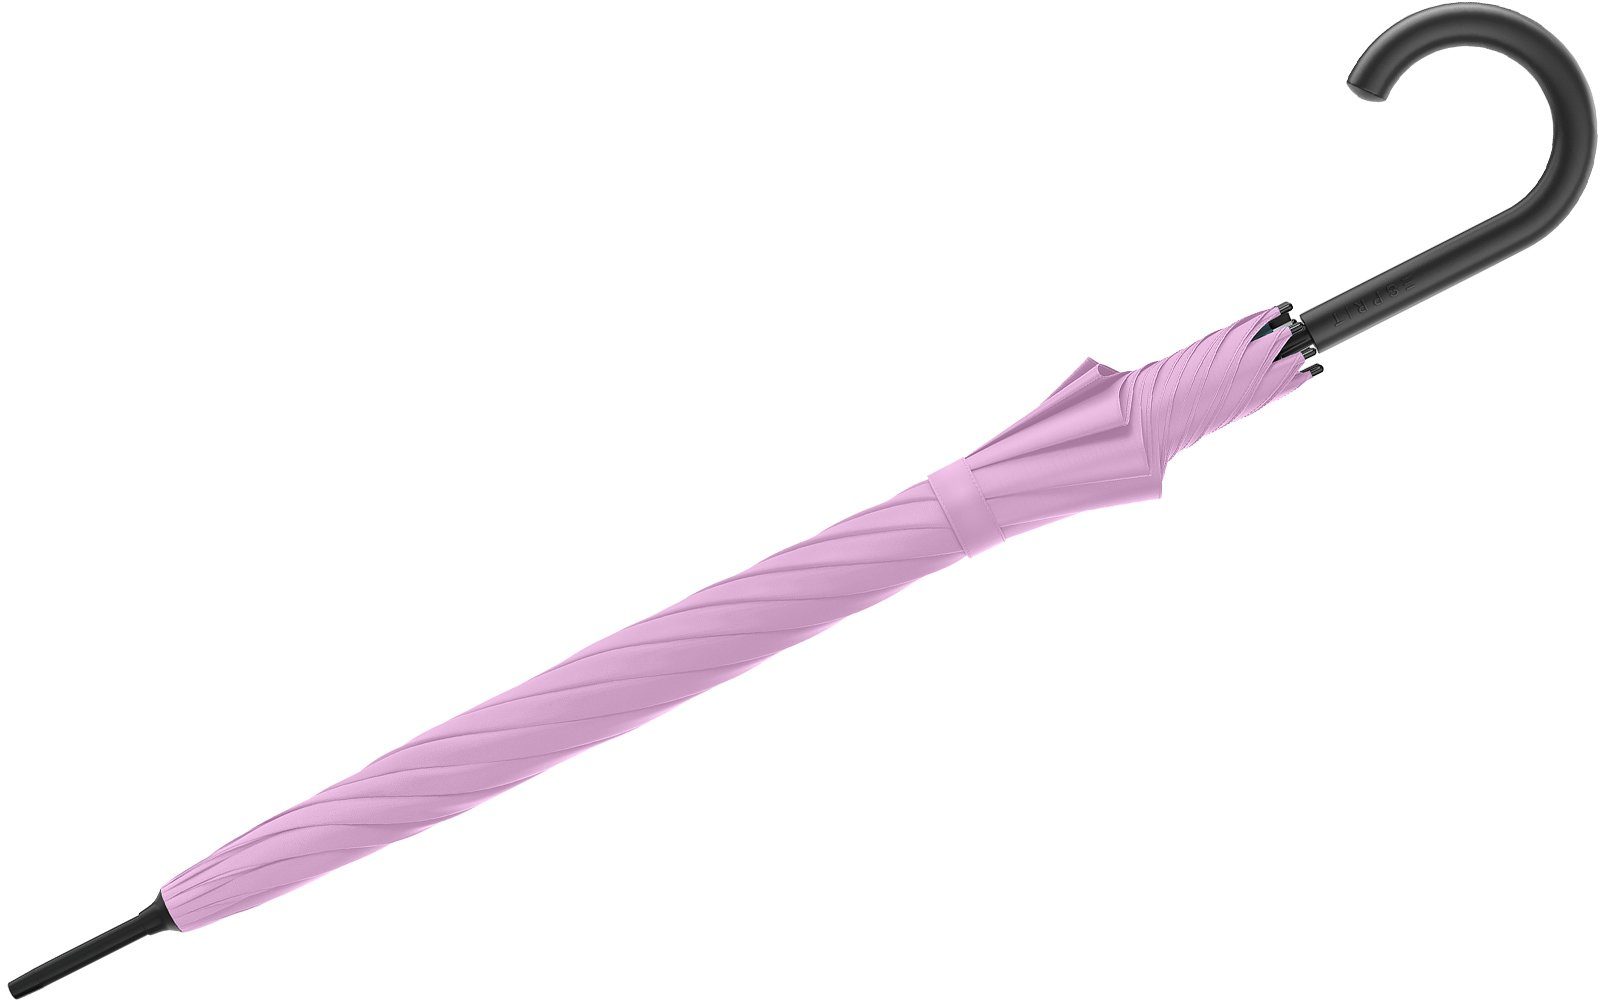 stabil, 2023, mit violett Automatik Langregenschirm FJ Damen-Regenschirm den groß in und Esprit Trendfarben